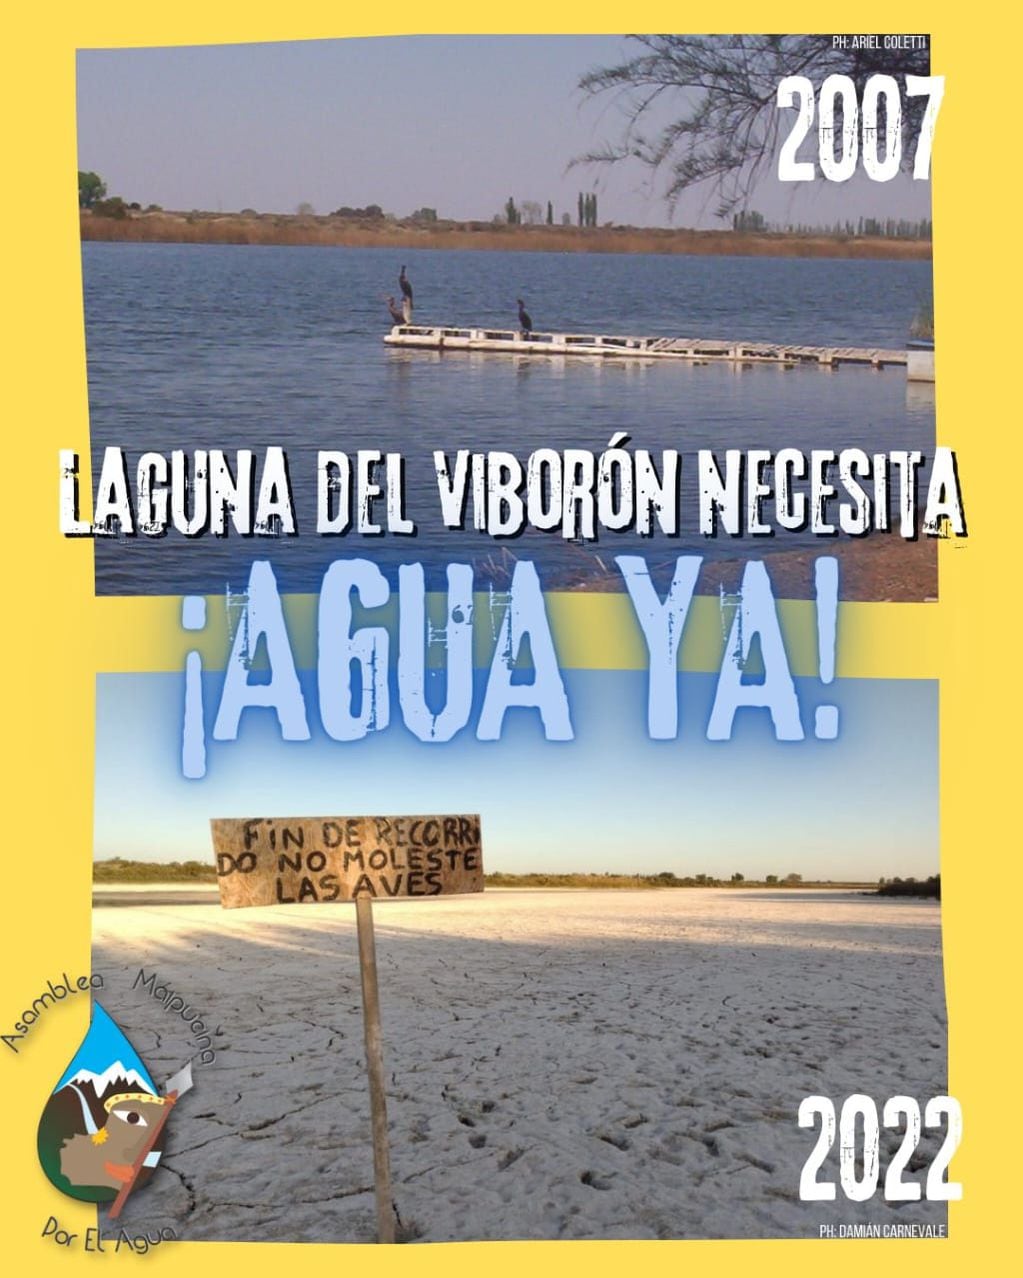 Reclamo de la Asamblea Maipucina por el Agua por la sequía de la Laguna del Viborón.